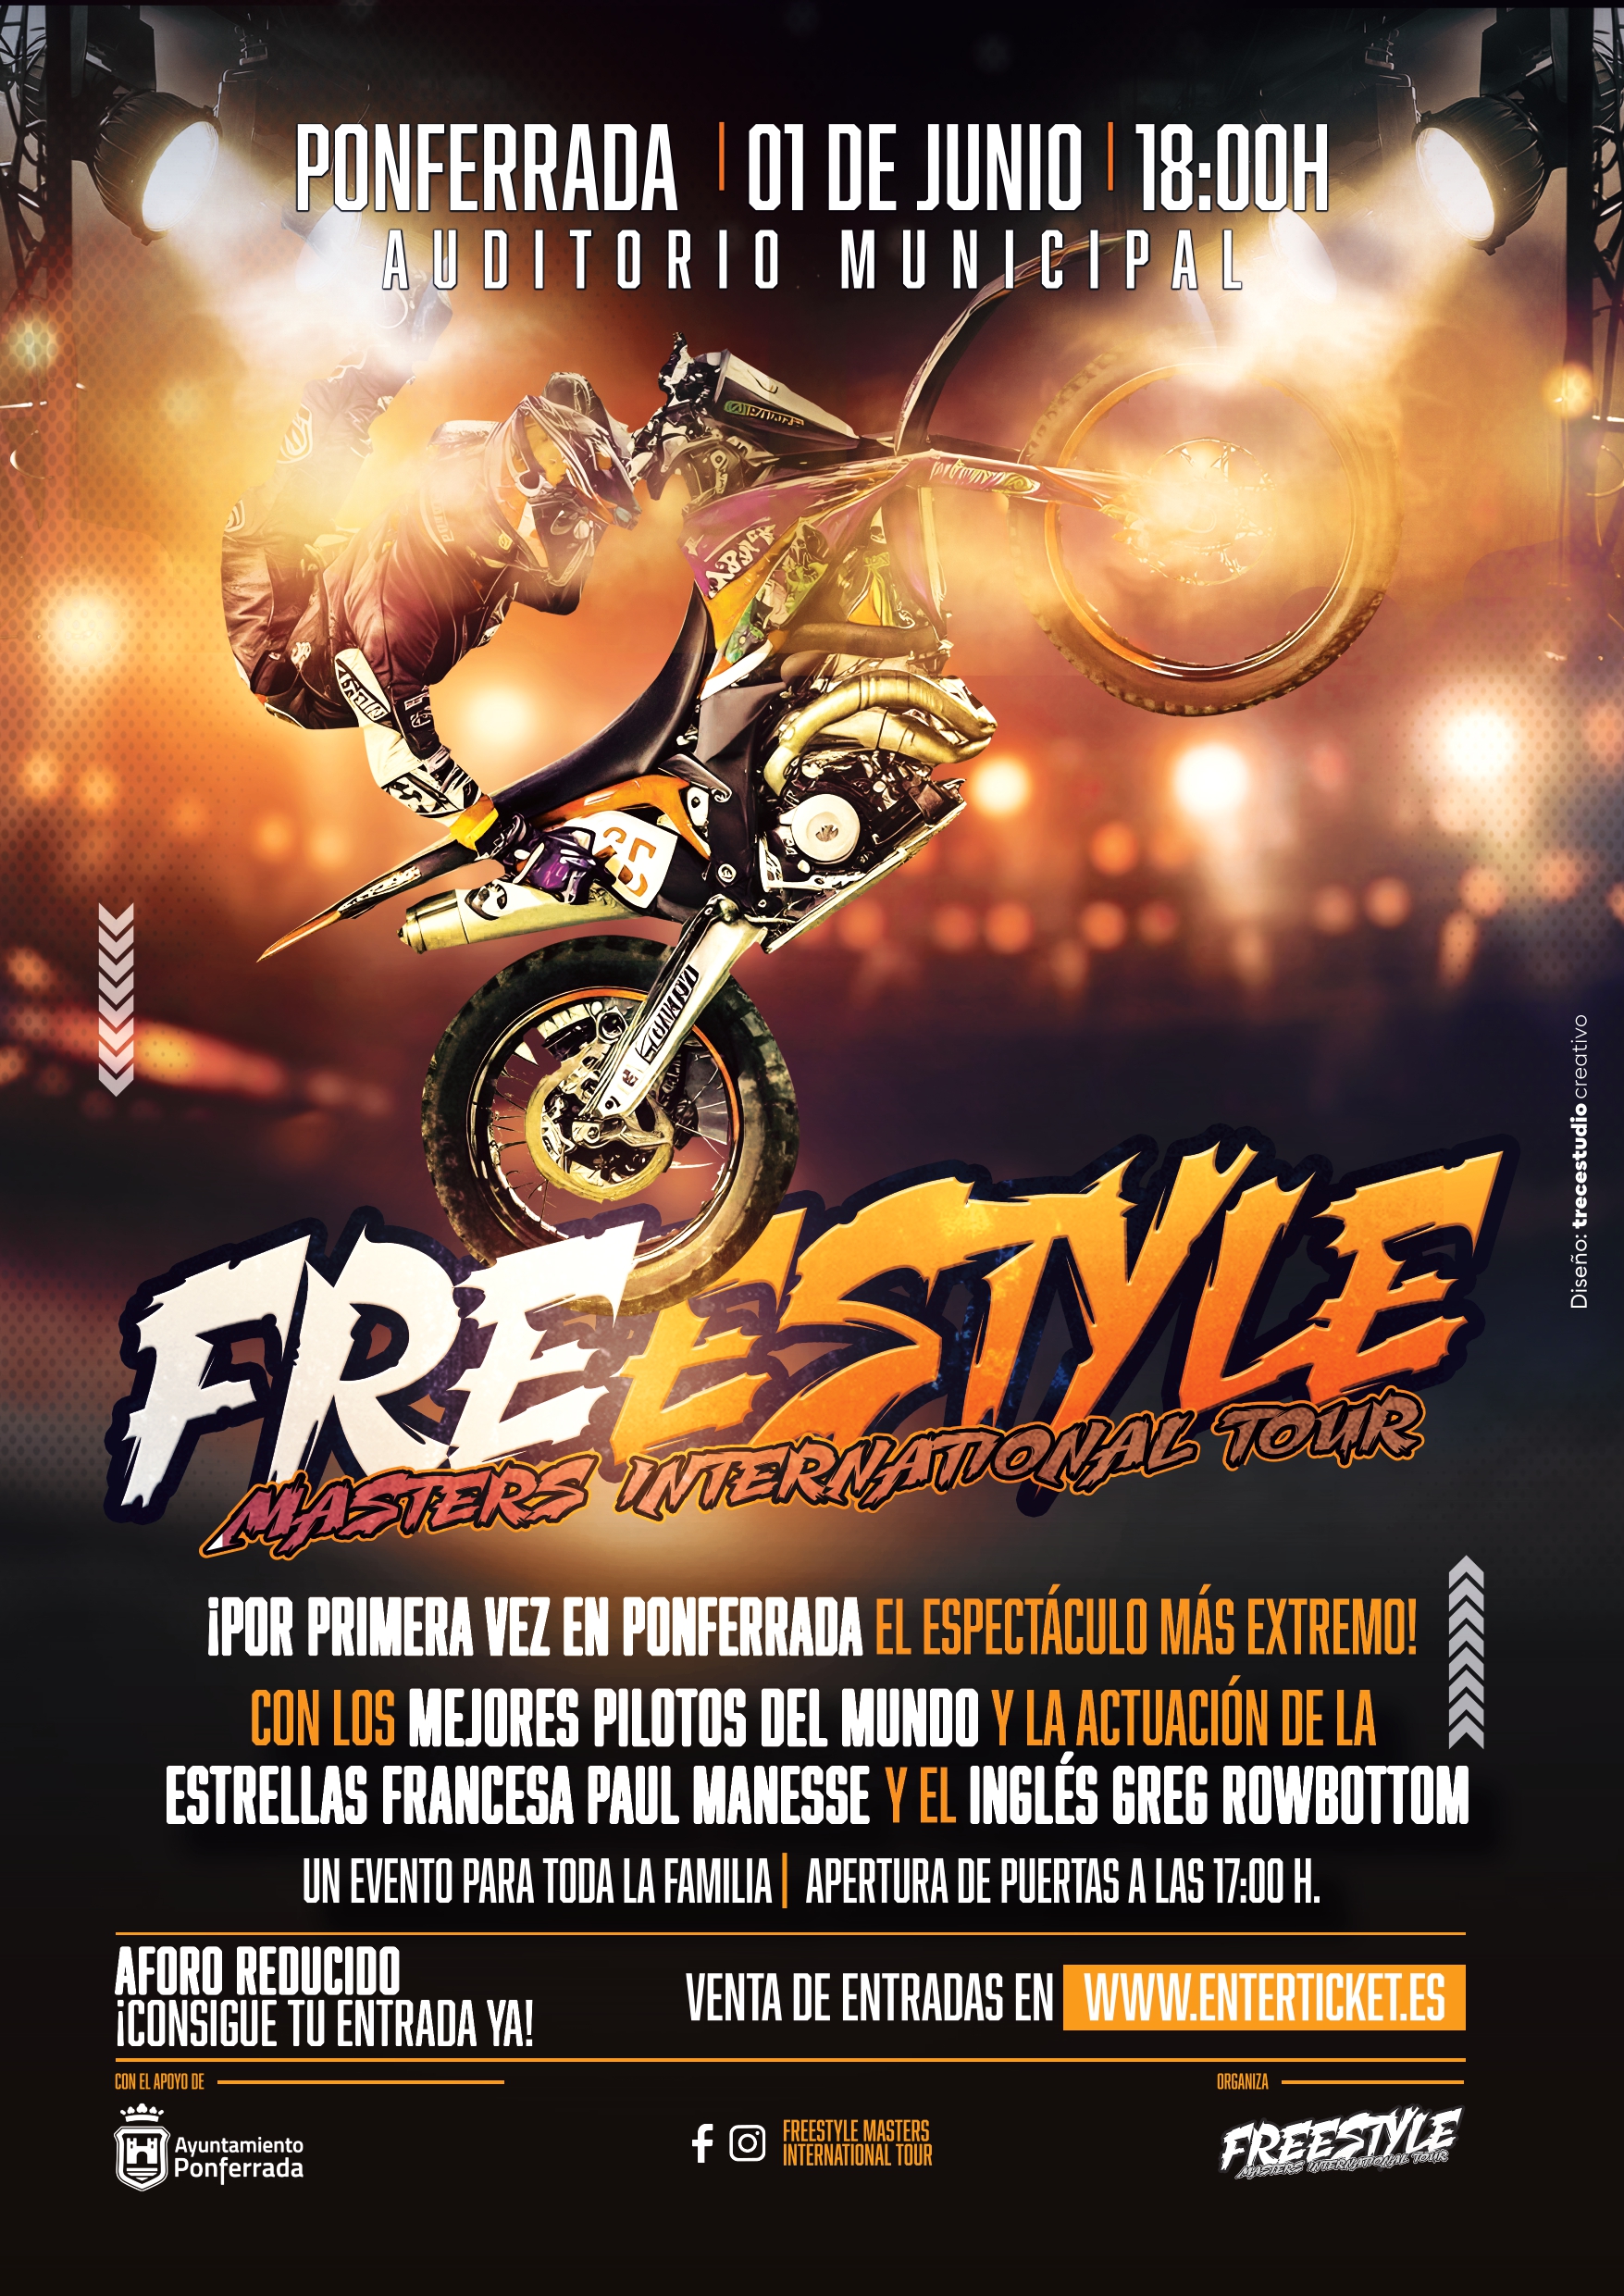 La exhibición Freestyle Masters International Tour La exhibición llegará a Ponferrada el 1 de junio 9